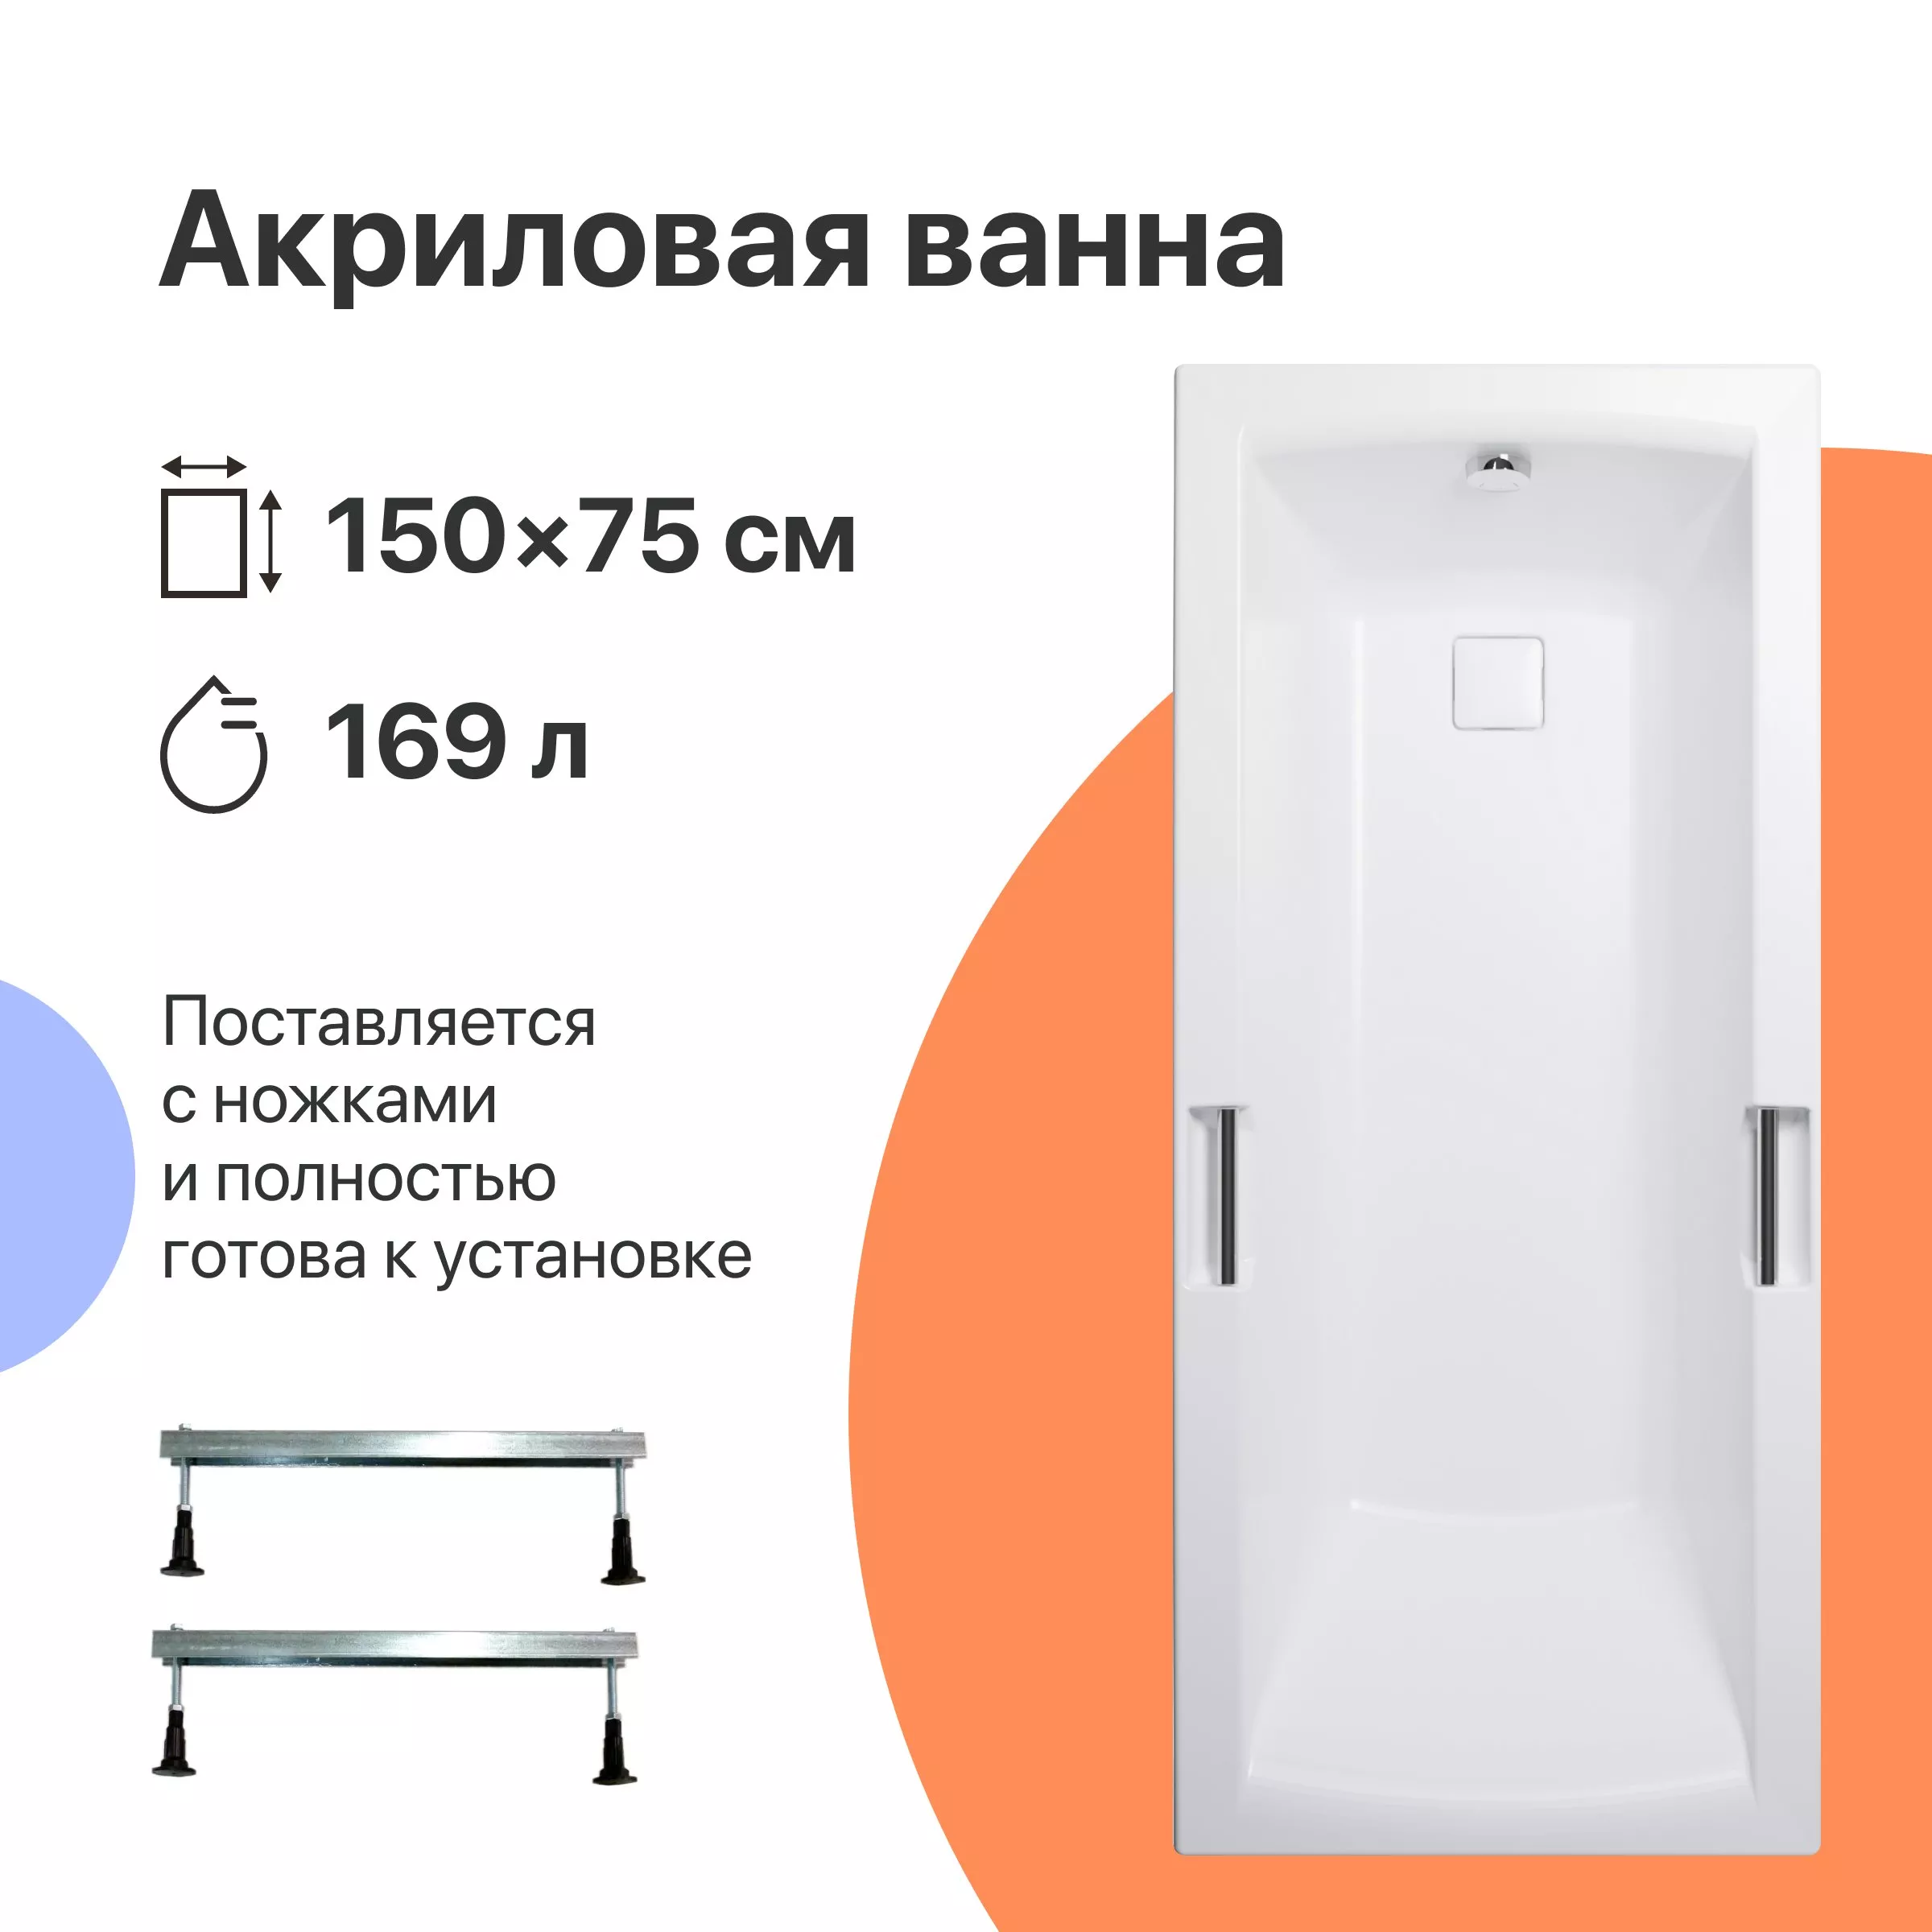 Акриловая ванна DIWO Дмитров 150x75 с ножками